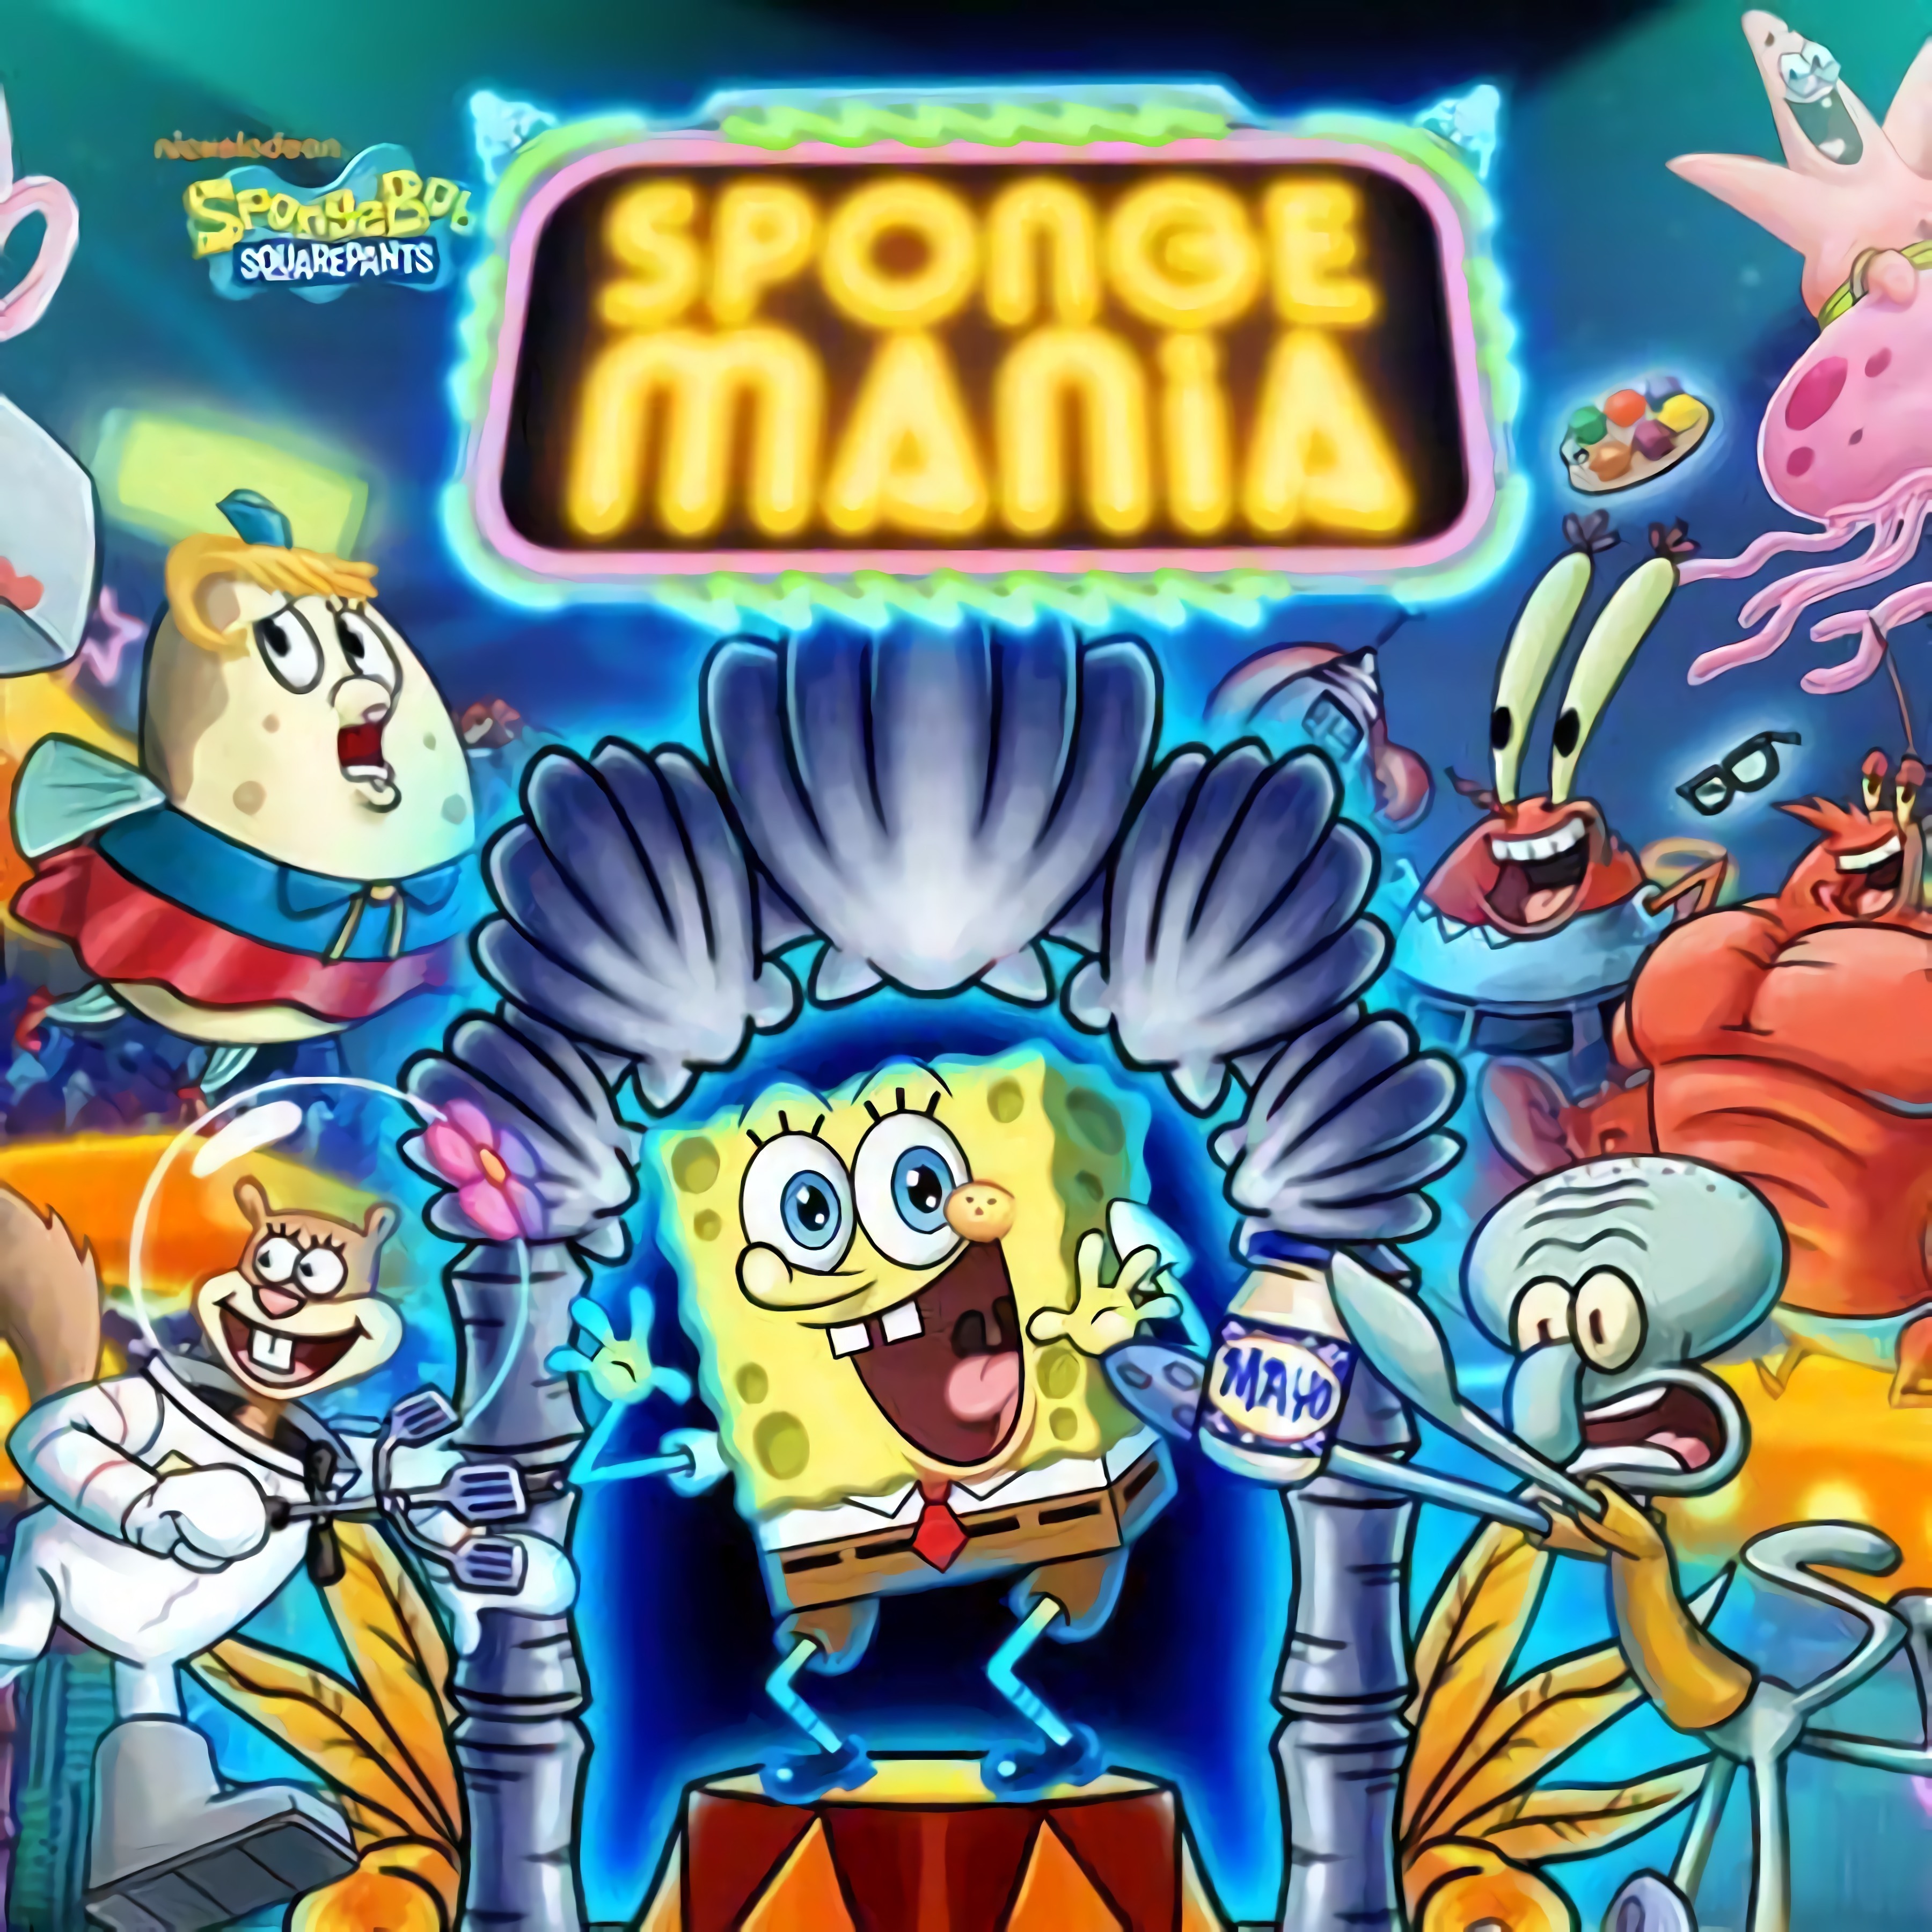 spongebob squarepants movie 3d game play online